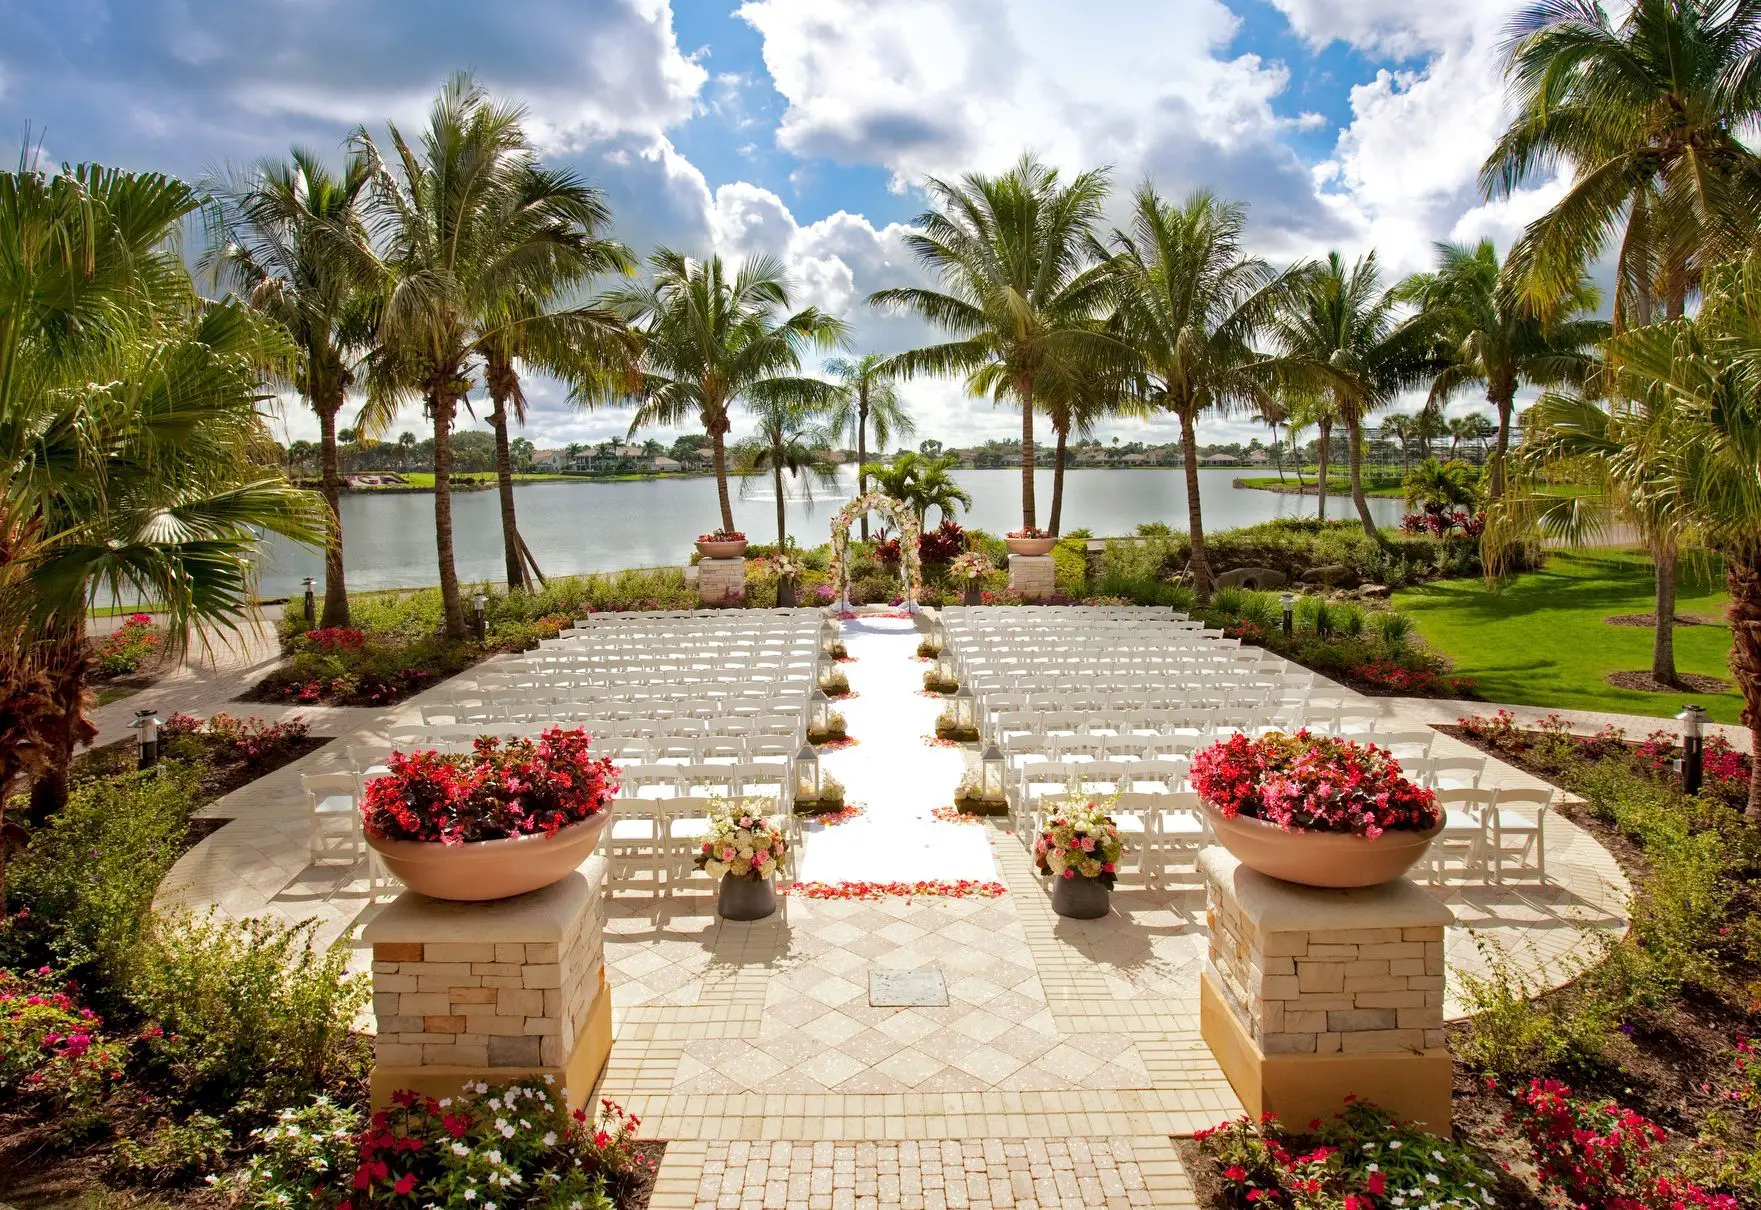 Where Is Palm Beach Gardens